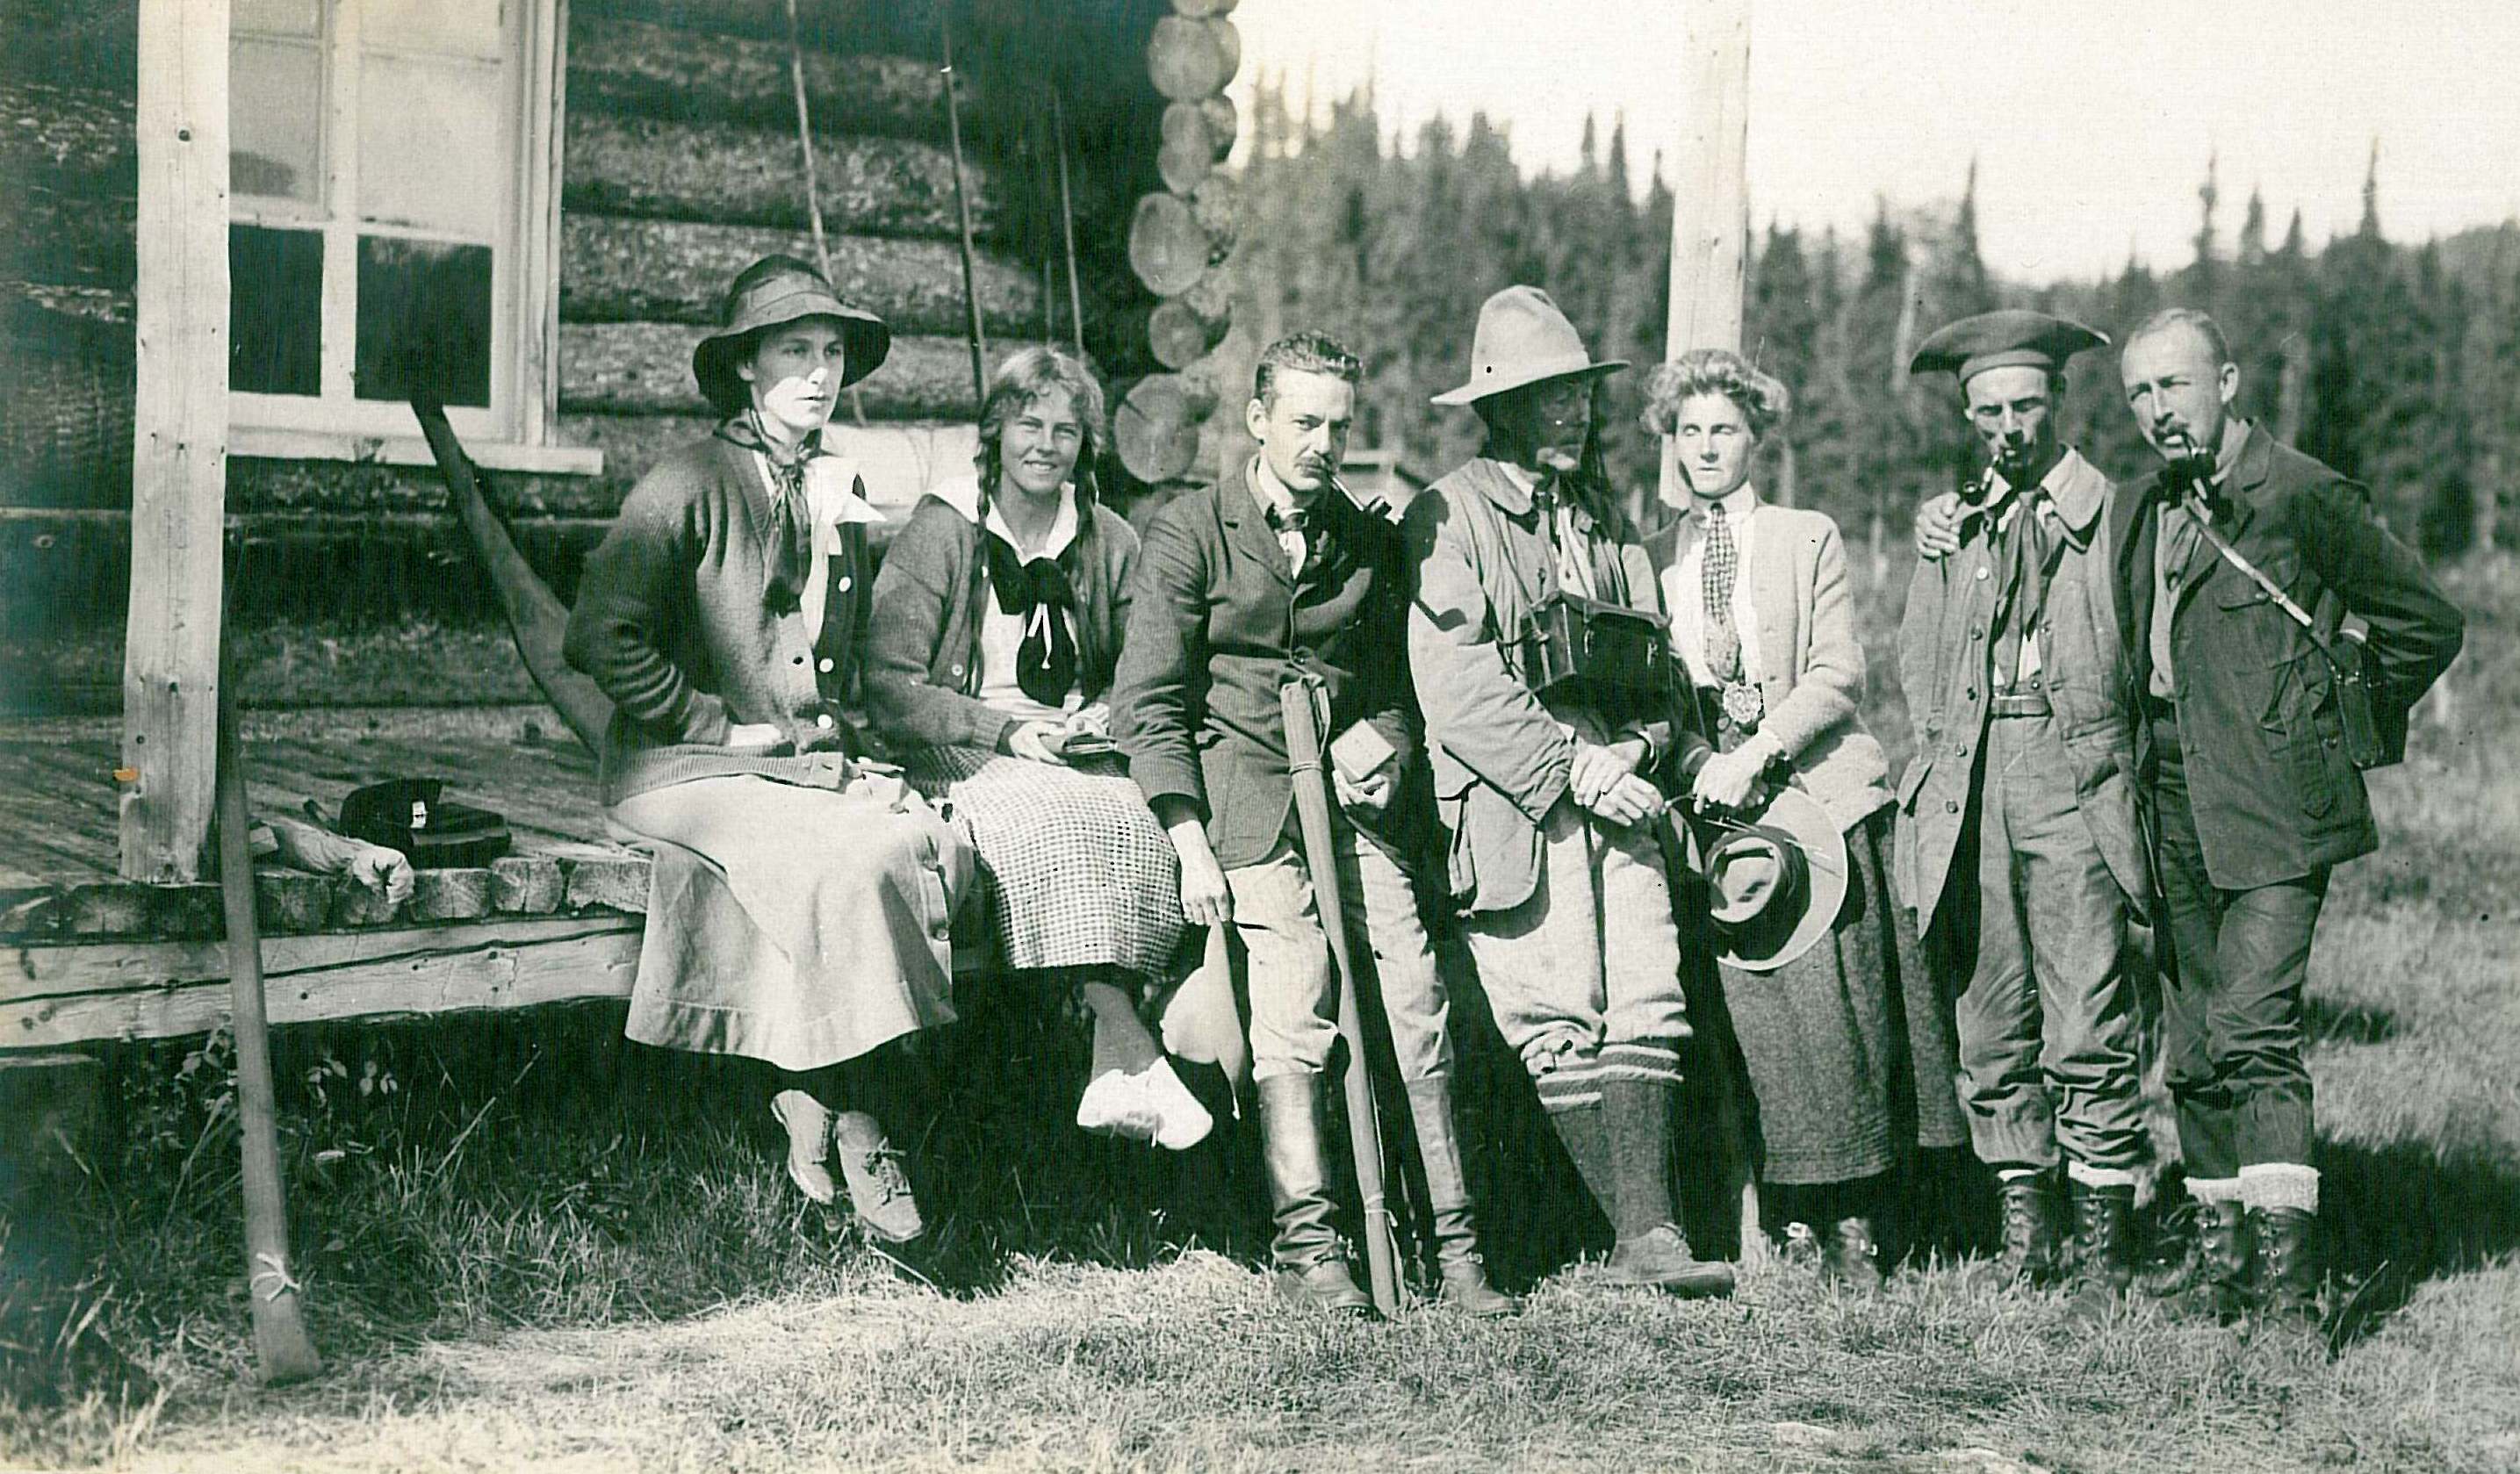 Quatre hommes et trois femmes posent devant un camp de chasse et pêche en rondins.